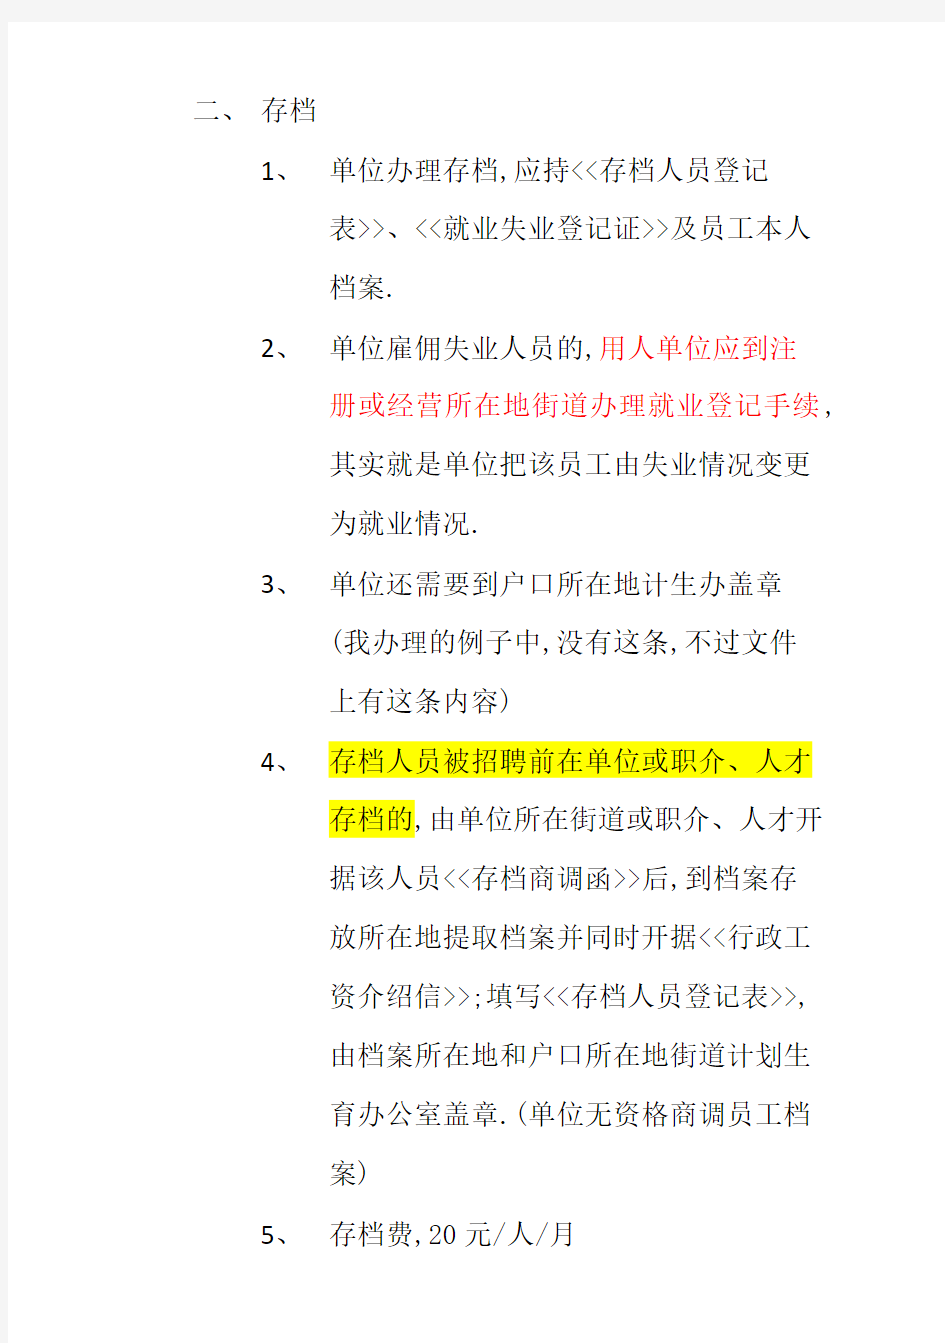 北京市单位在各区县人才职介开户及存档的程序介绍